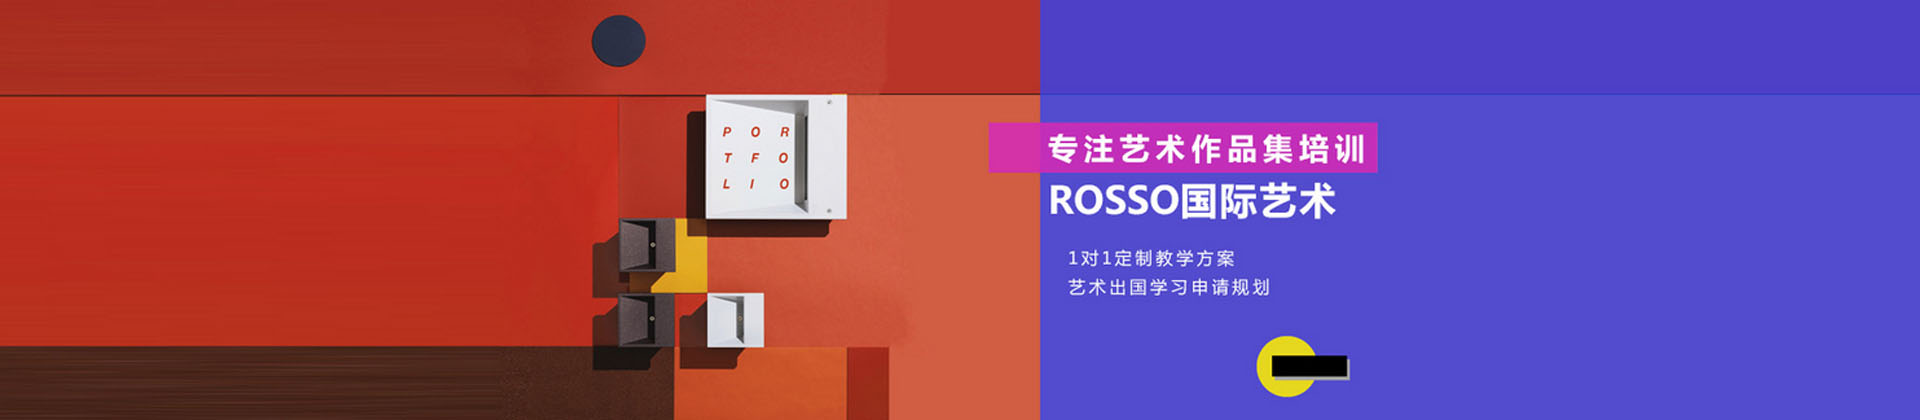 深圳ROSSO艺术教育